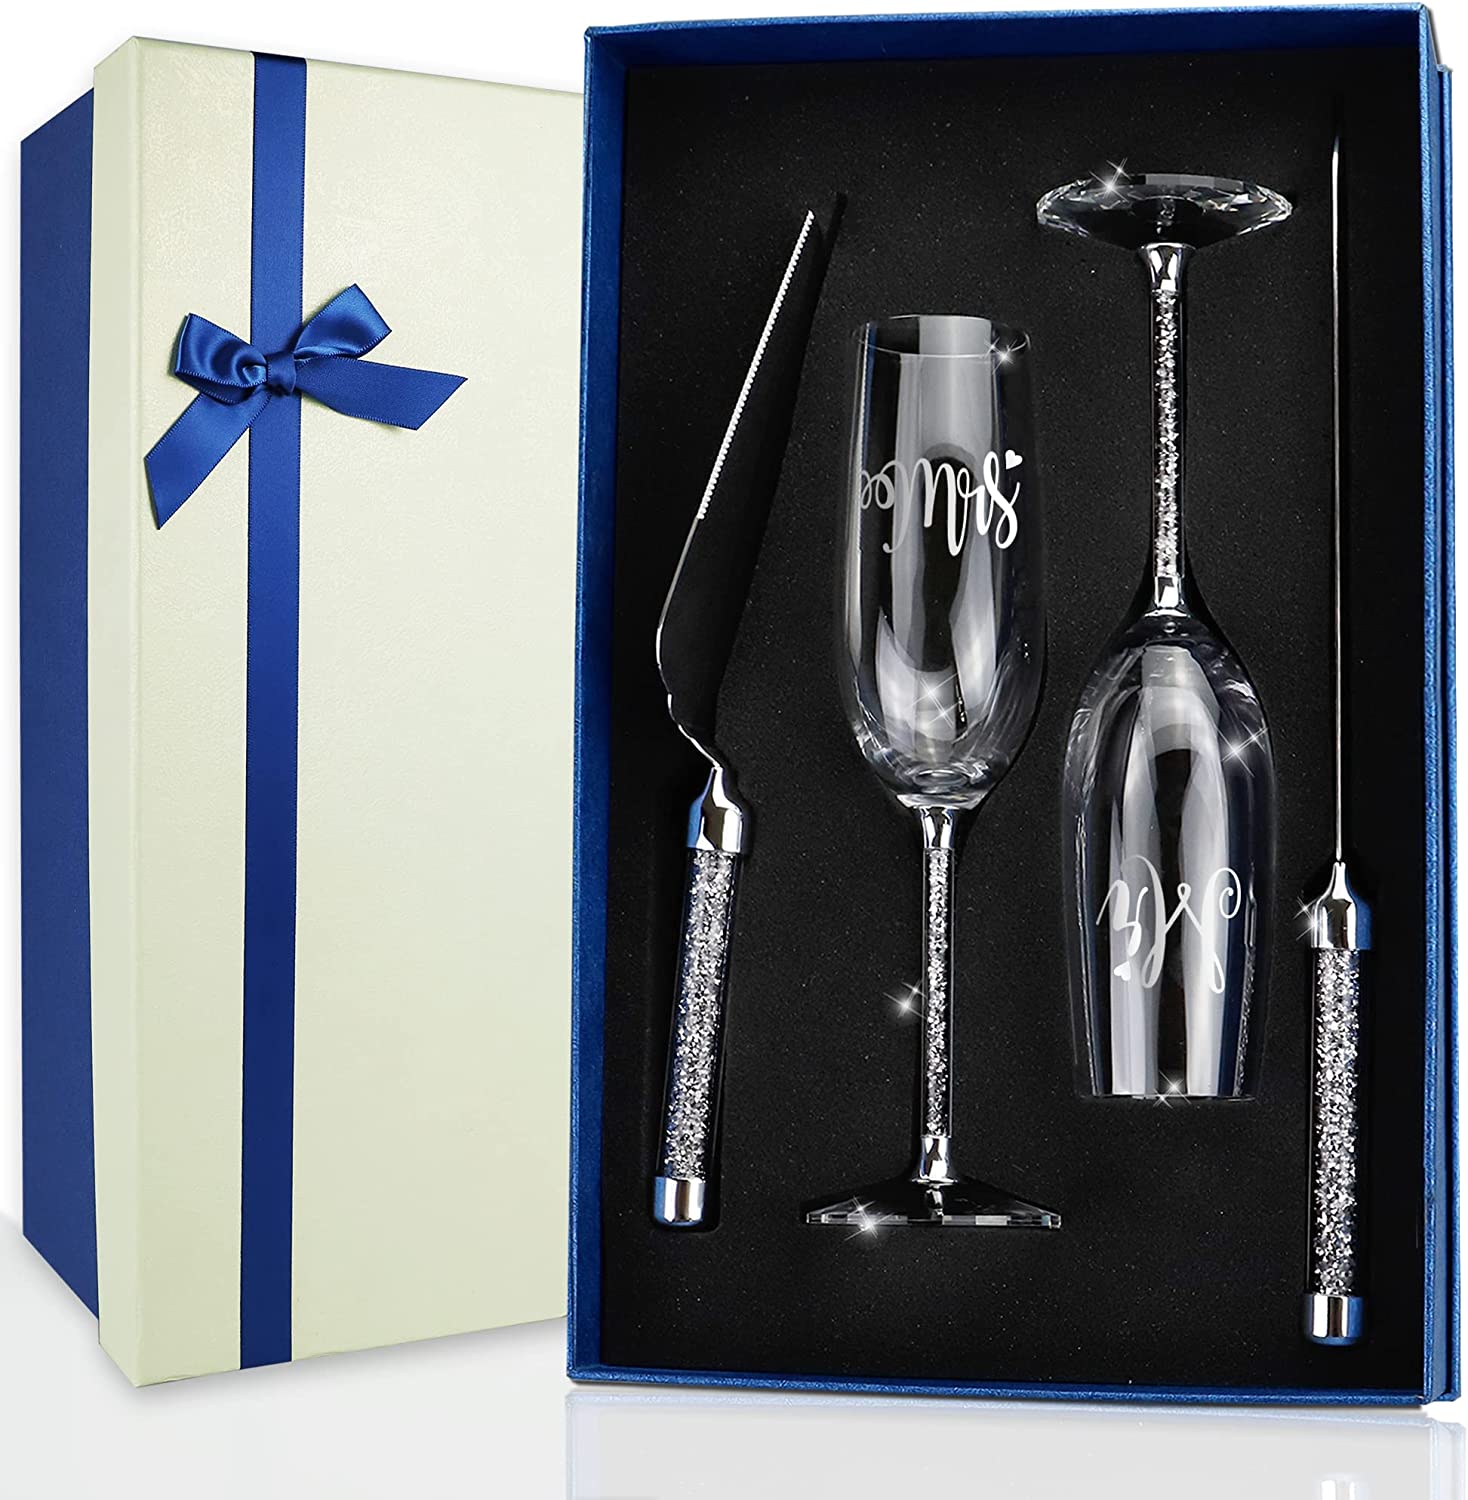 https://varlka.com/cdn/shop/products/wedding-cake-knife-and-server-set-crystal-champagne-flutes-glasses-engraved-mr-mrs-cake-cutting-set-for-wedding-bride-and-groom-toasting-champagne-flutes-annive-890650.jpg?v=1699263662